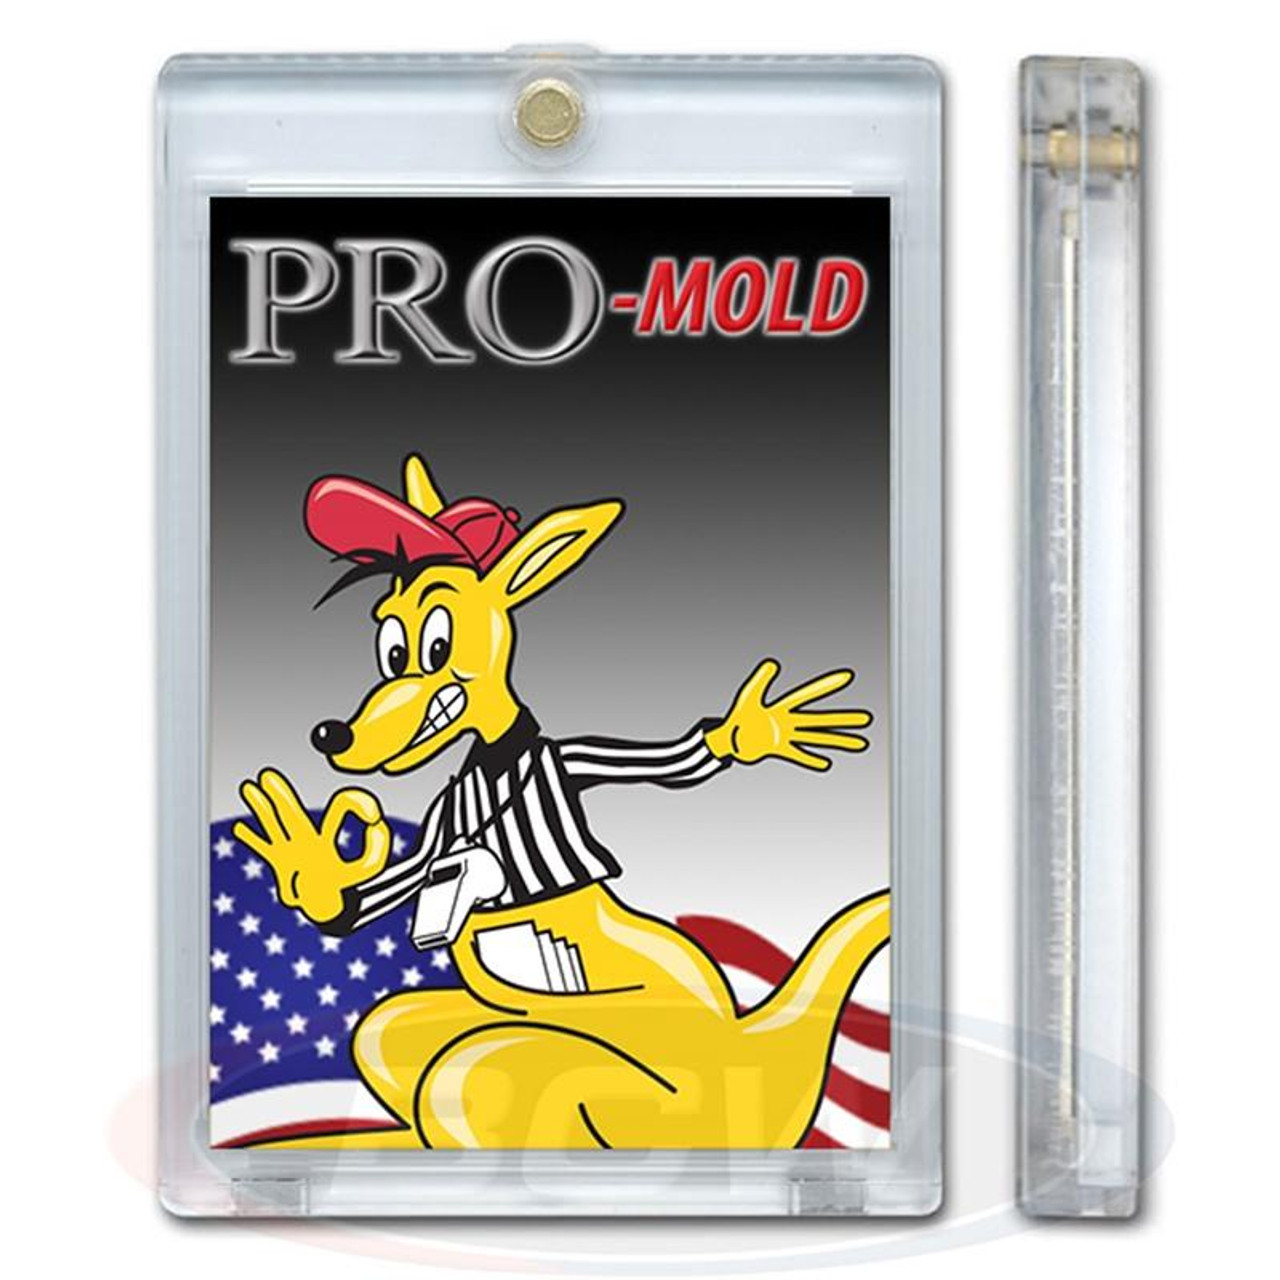 Pro-Mold Magnetic Card Holder 80pt / Case of 200